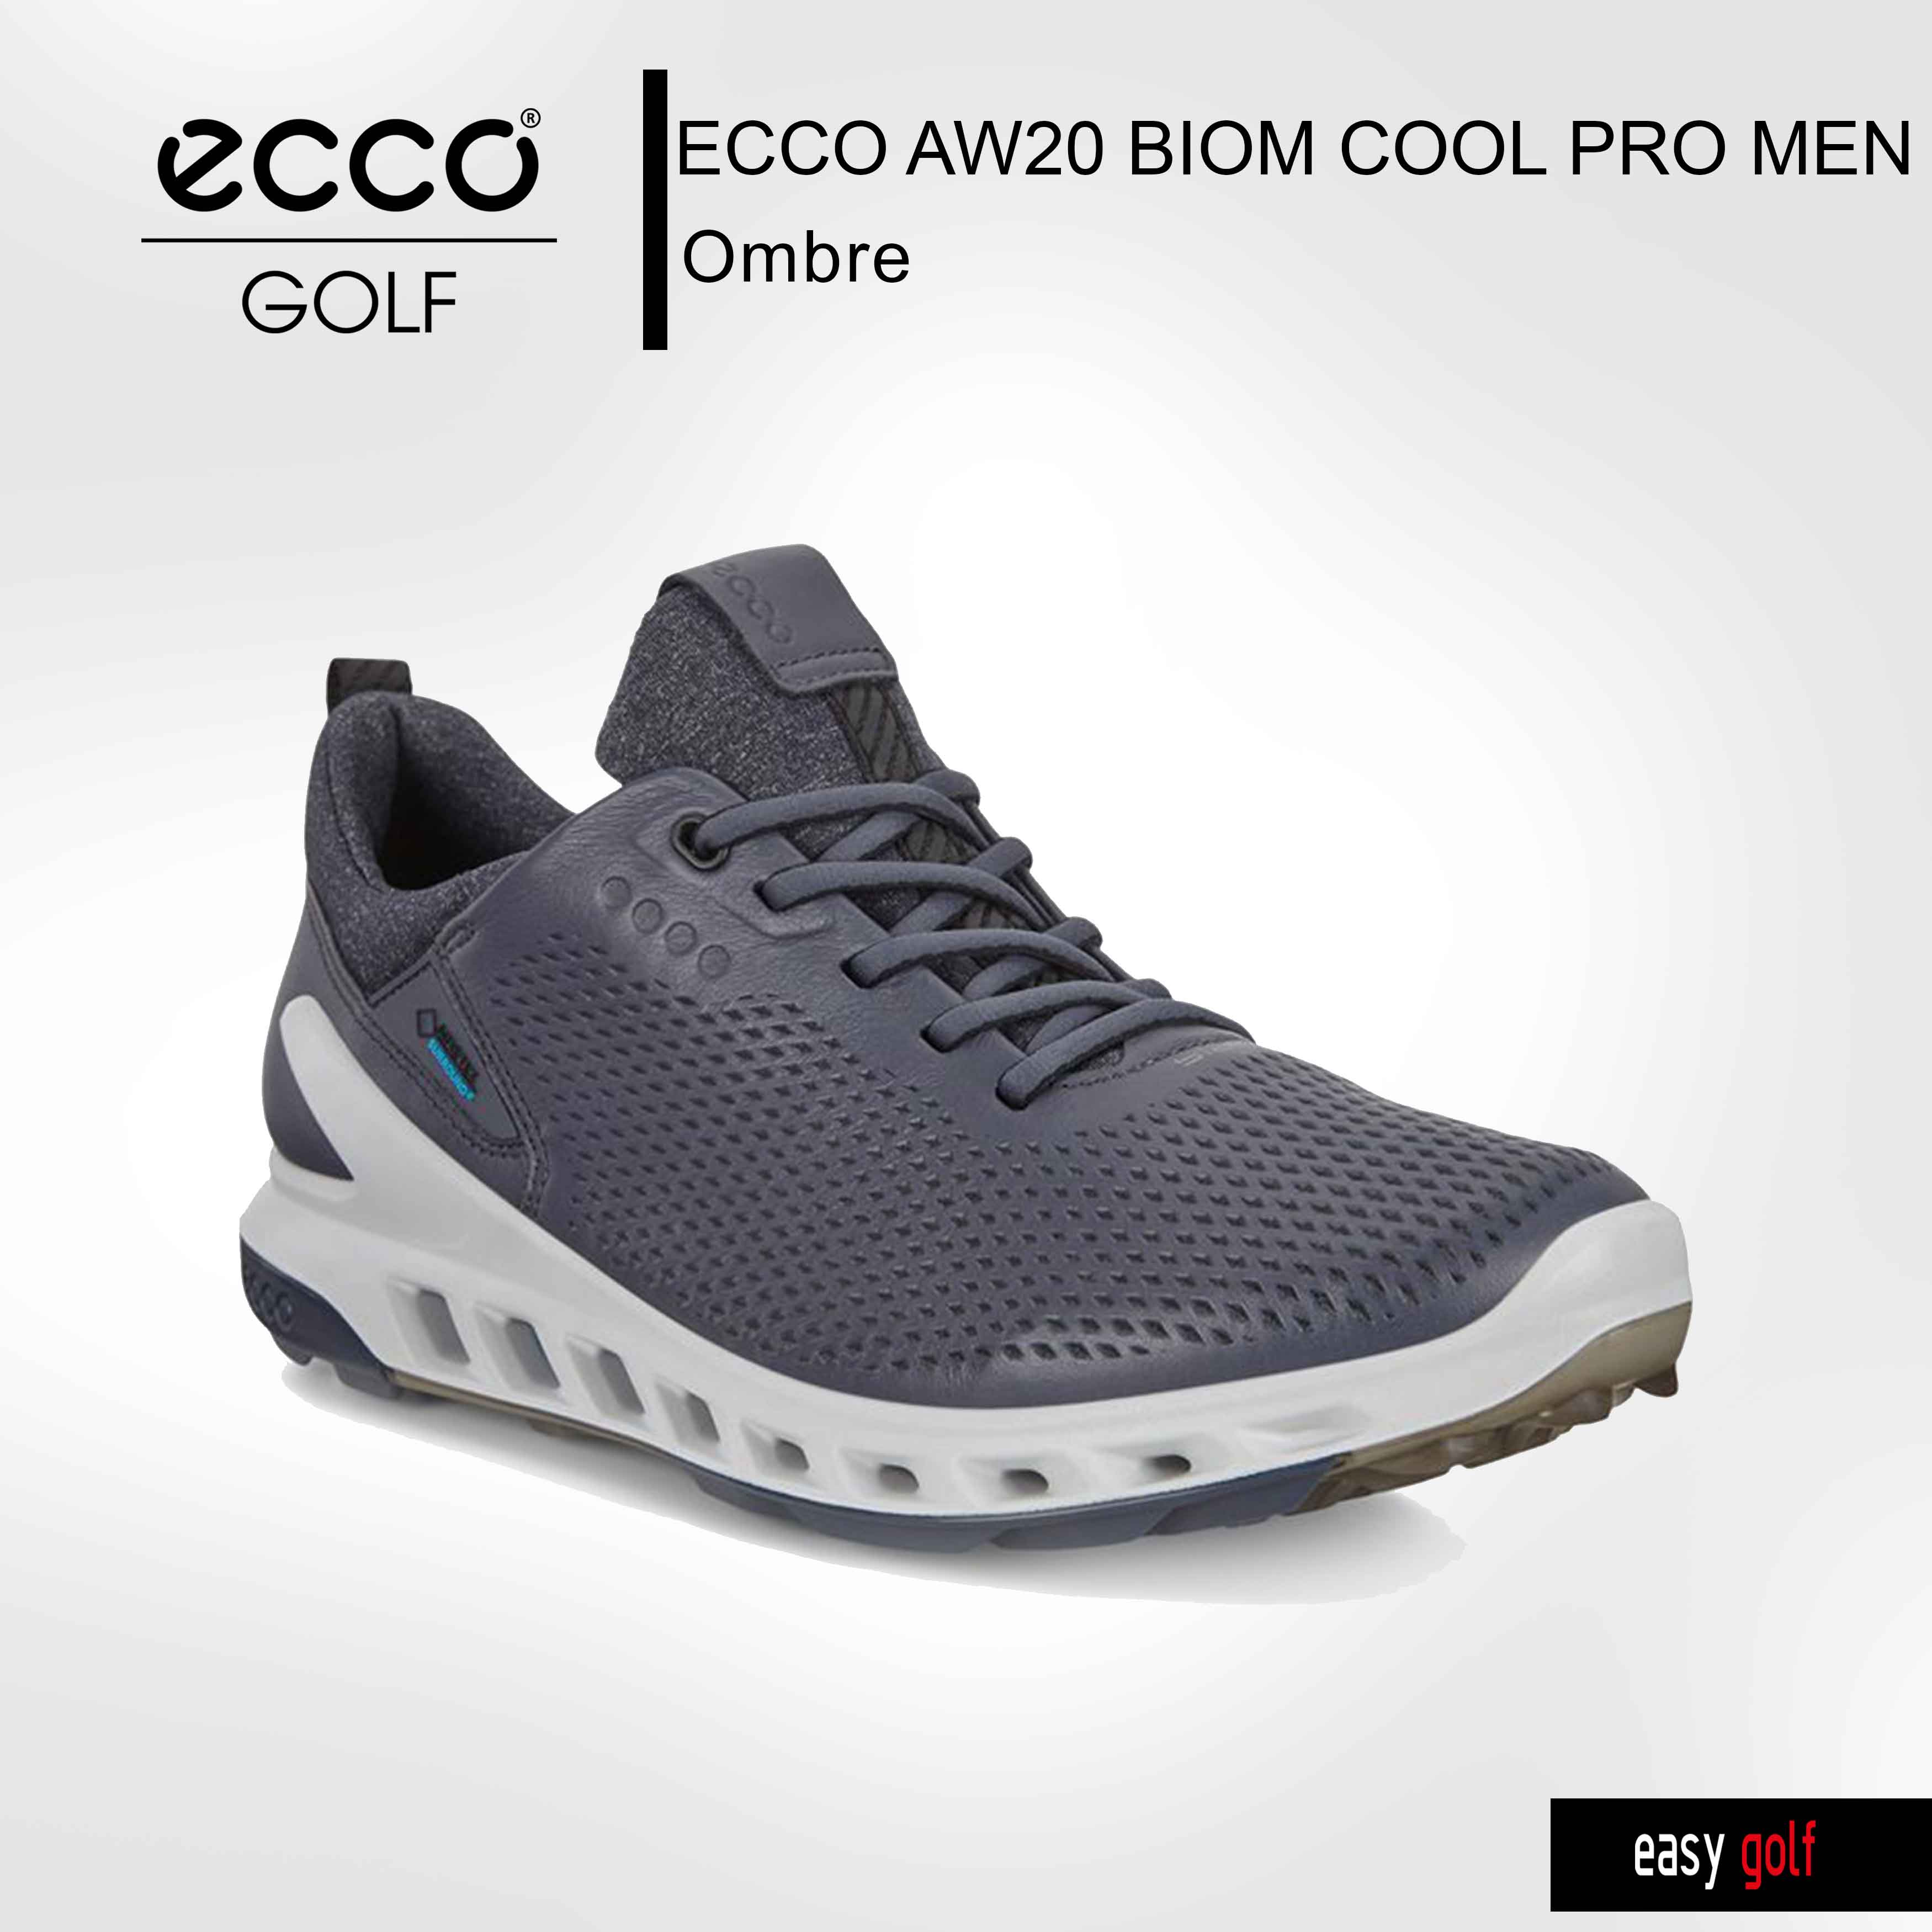 โปรโมชั่น 100 ชิ้น ECCO GOLF รองเท้ากอล์ฟผู้ชาย รองเท้ากีฬาชาย Golf Shoes รุ่น ECCO AW20 BIOM COOL PRO MEN สี Ombre